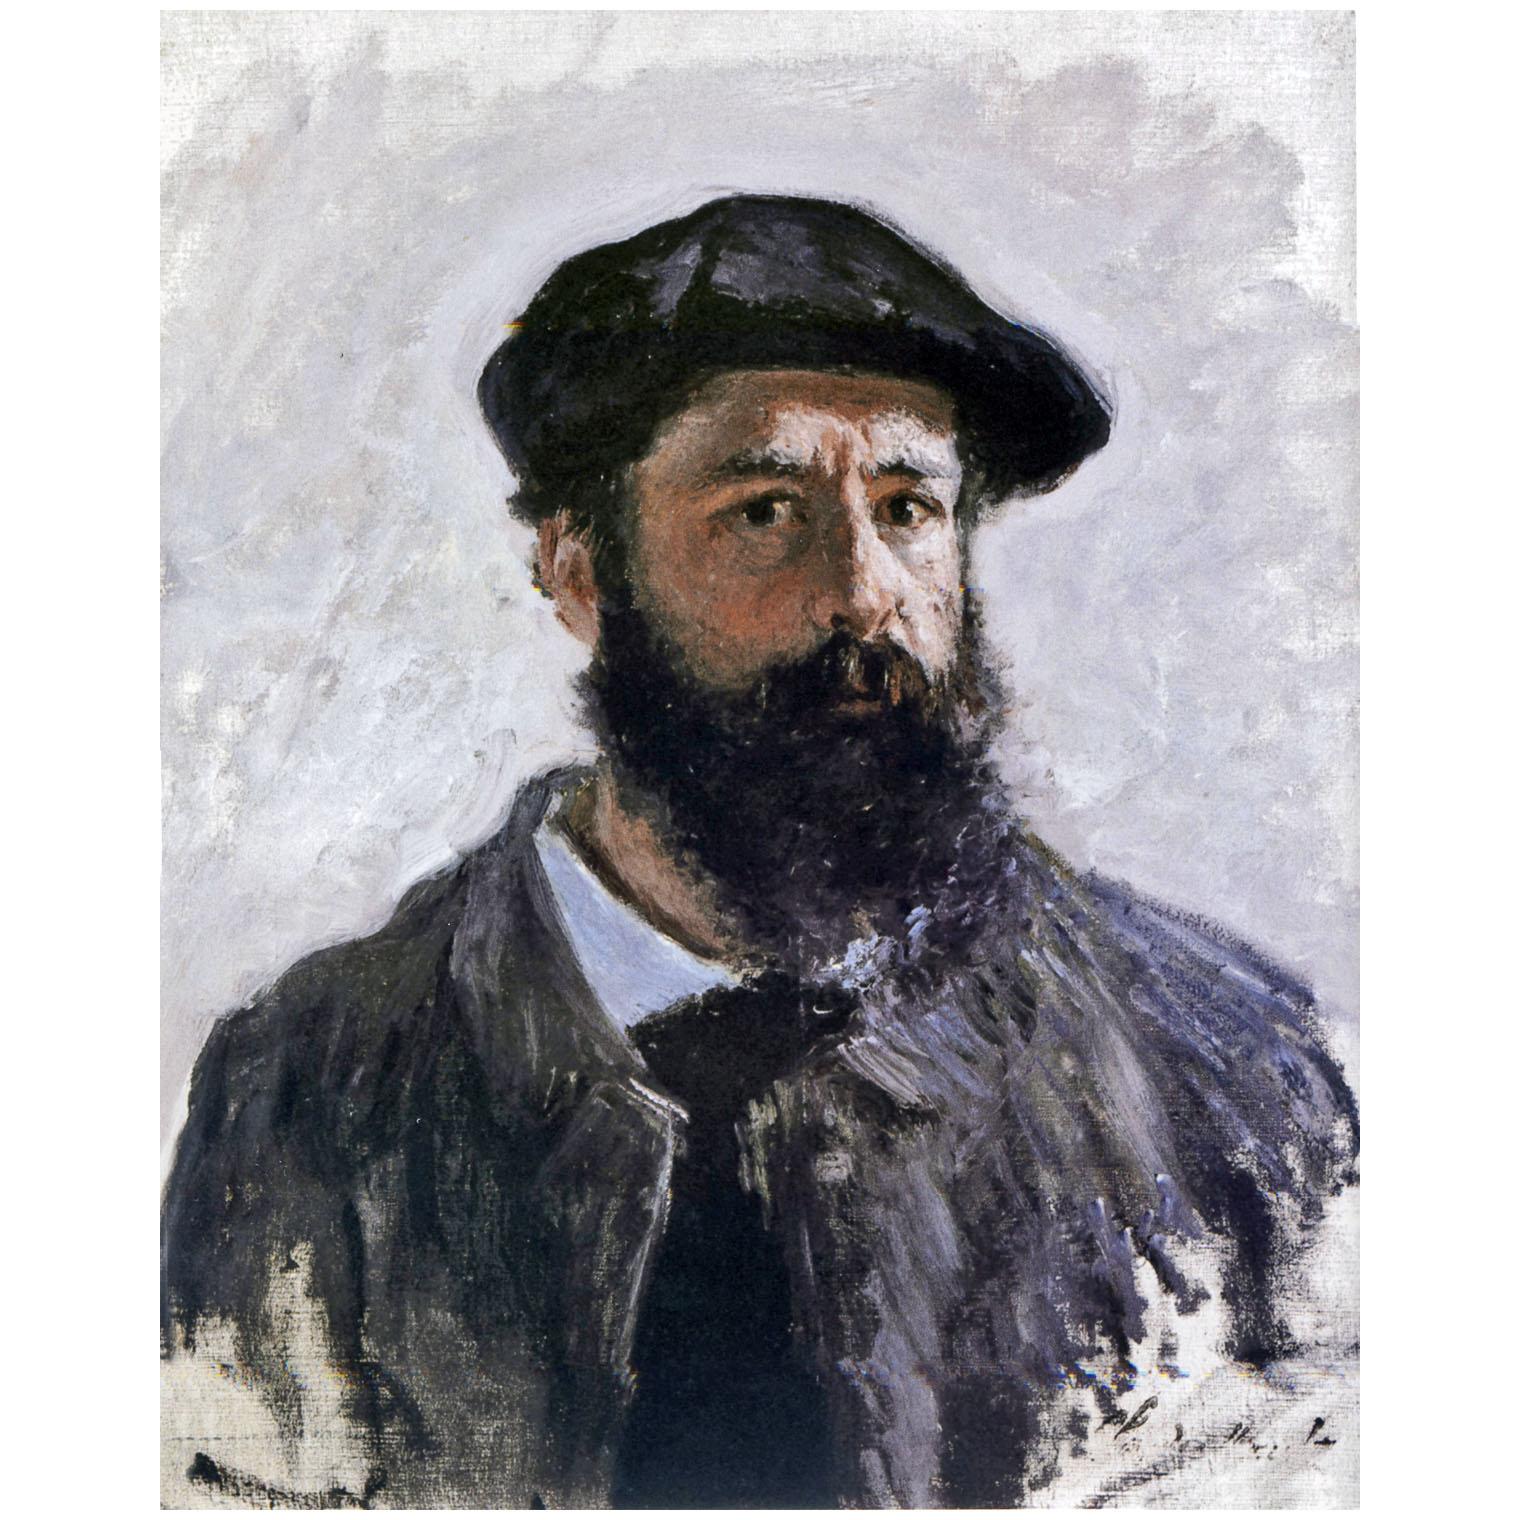 Claude Monet. Autoportrait en beret. 1886. Private collection